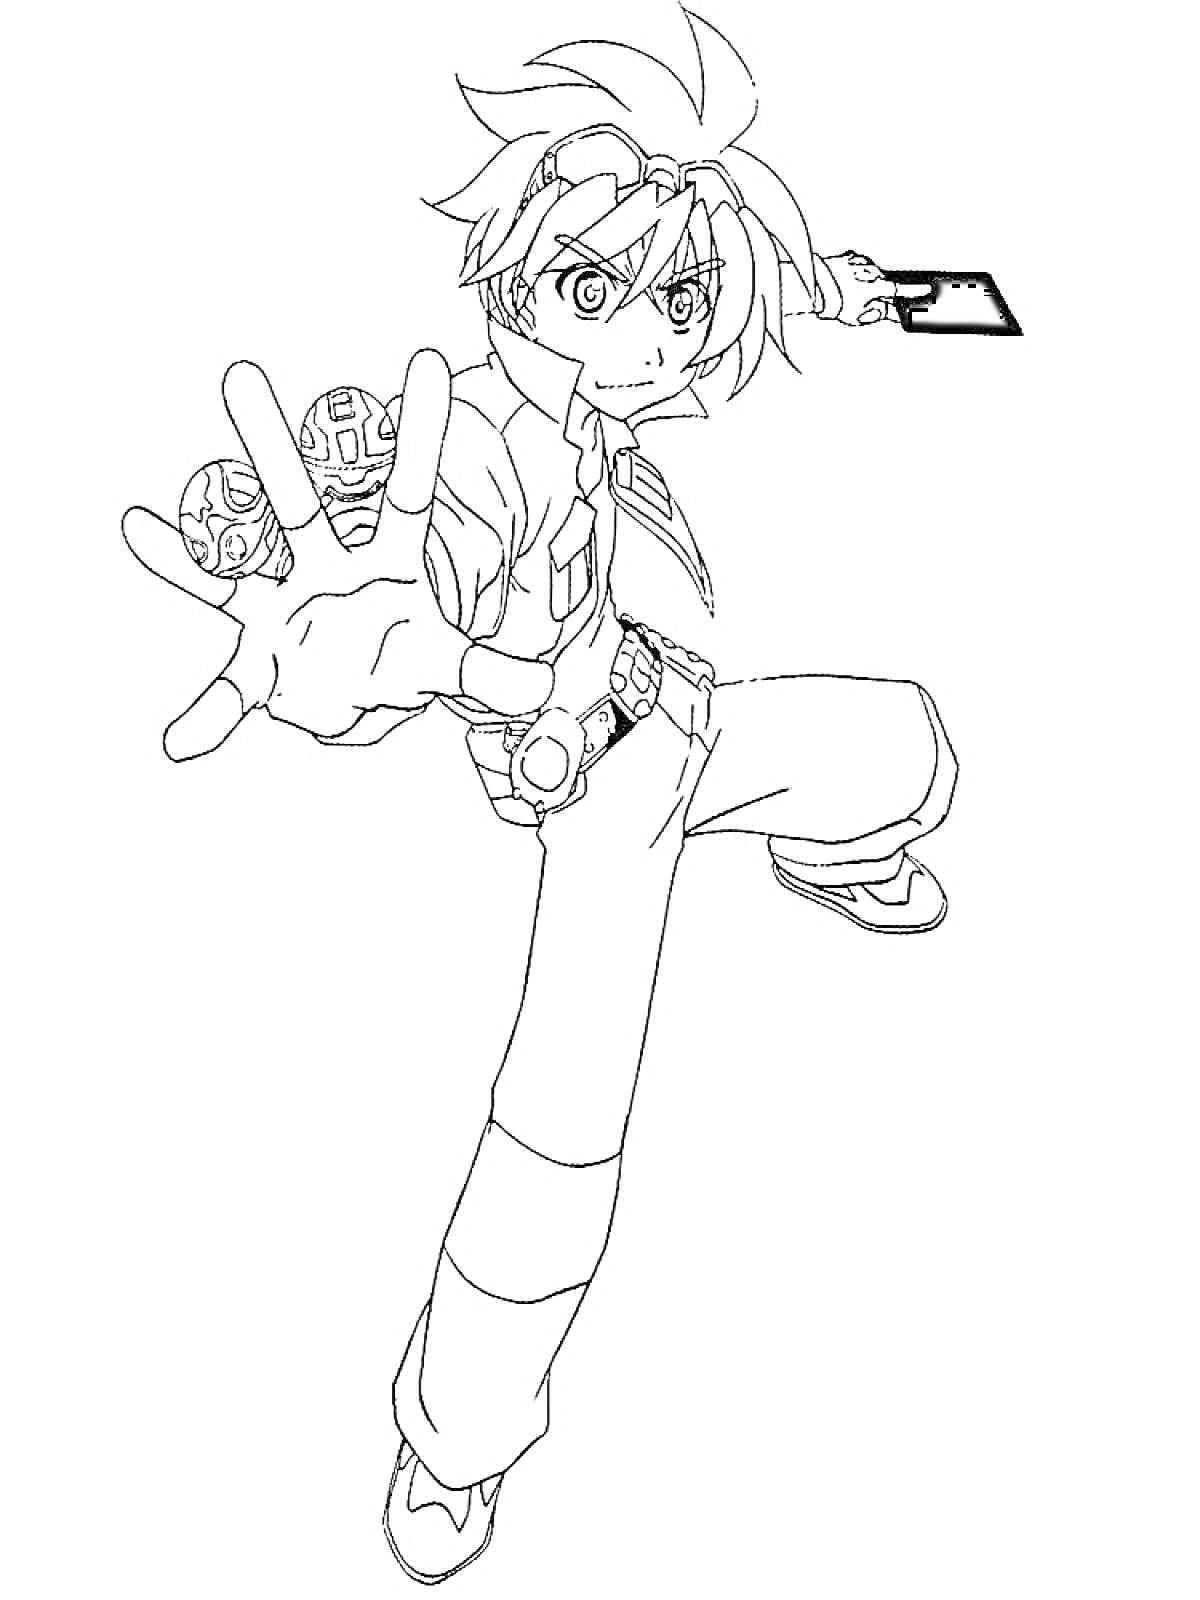 Раскраска Мальчик с Бакуганами на ладони и карточкой в руке